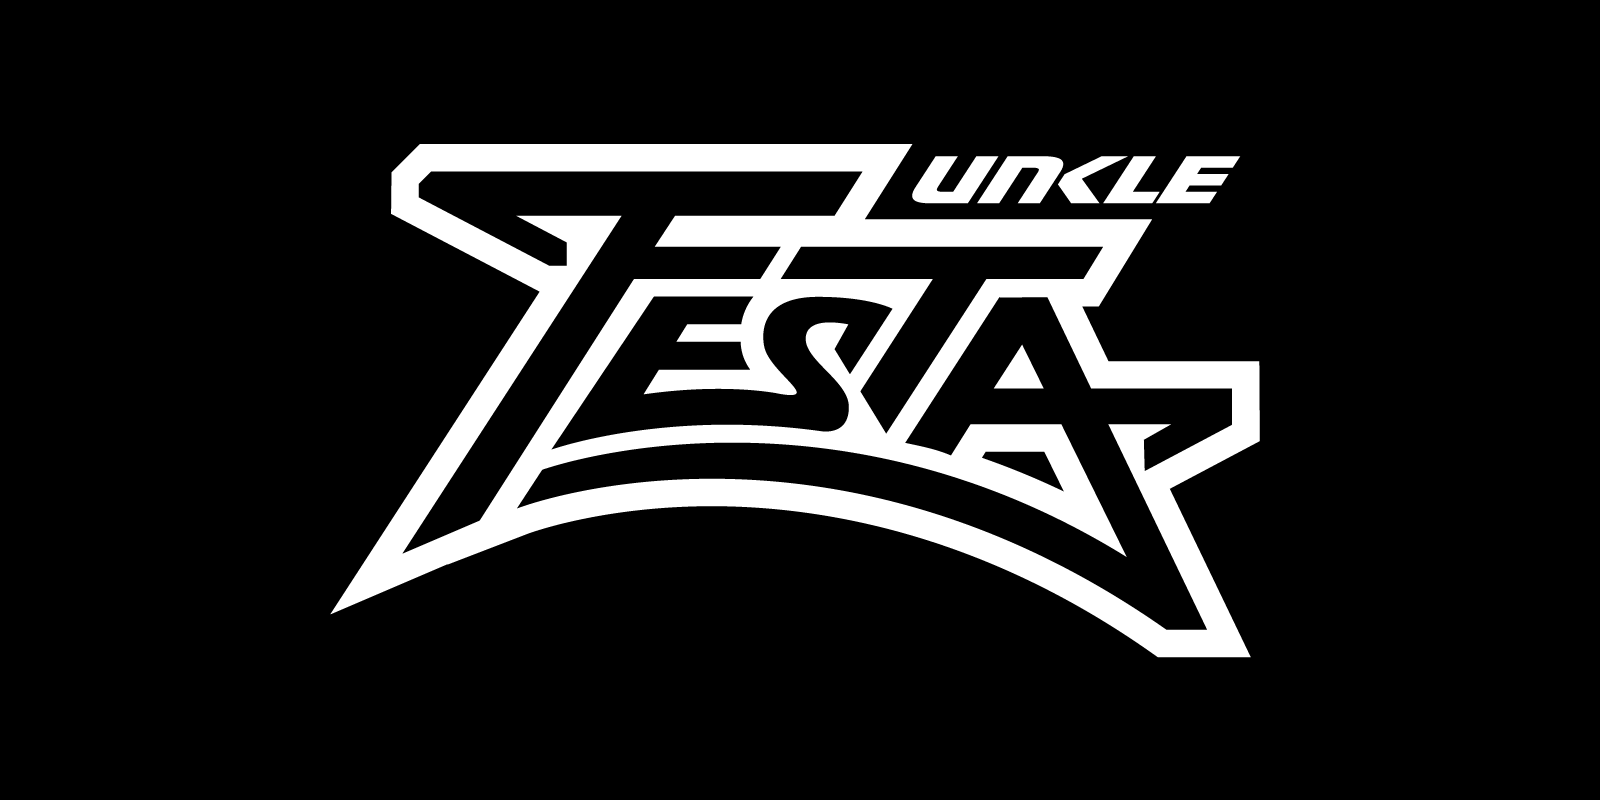 DJ Unkle Festa